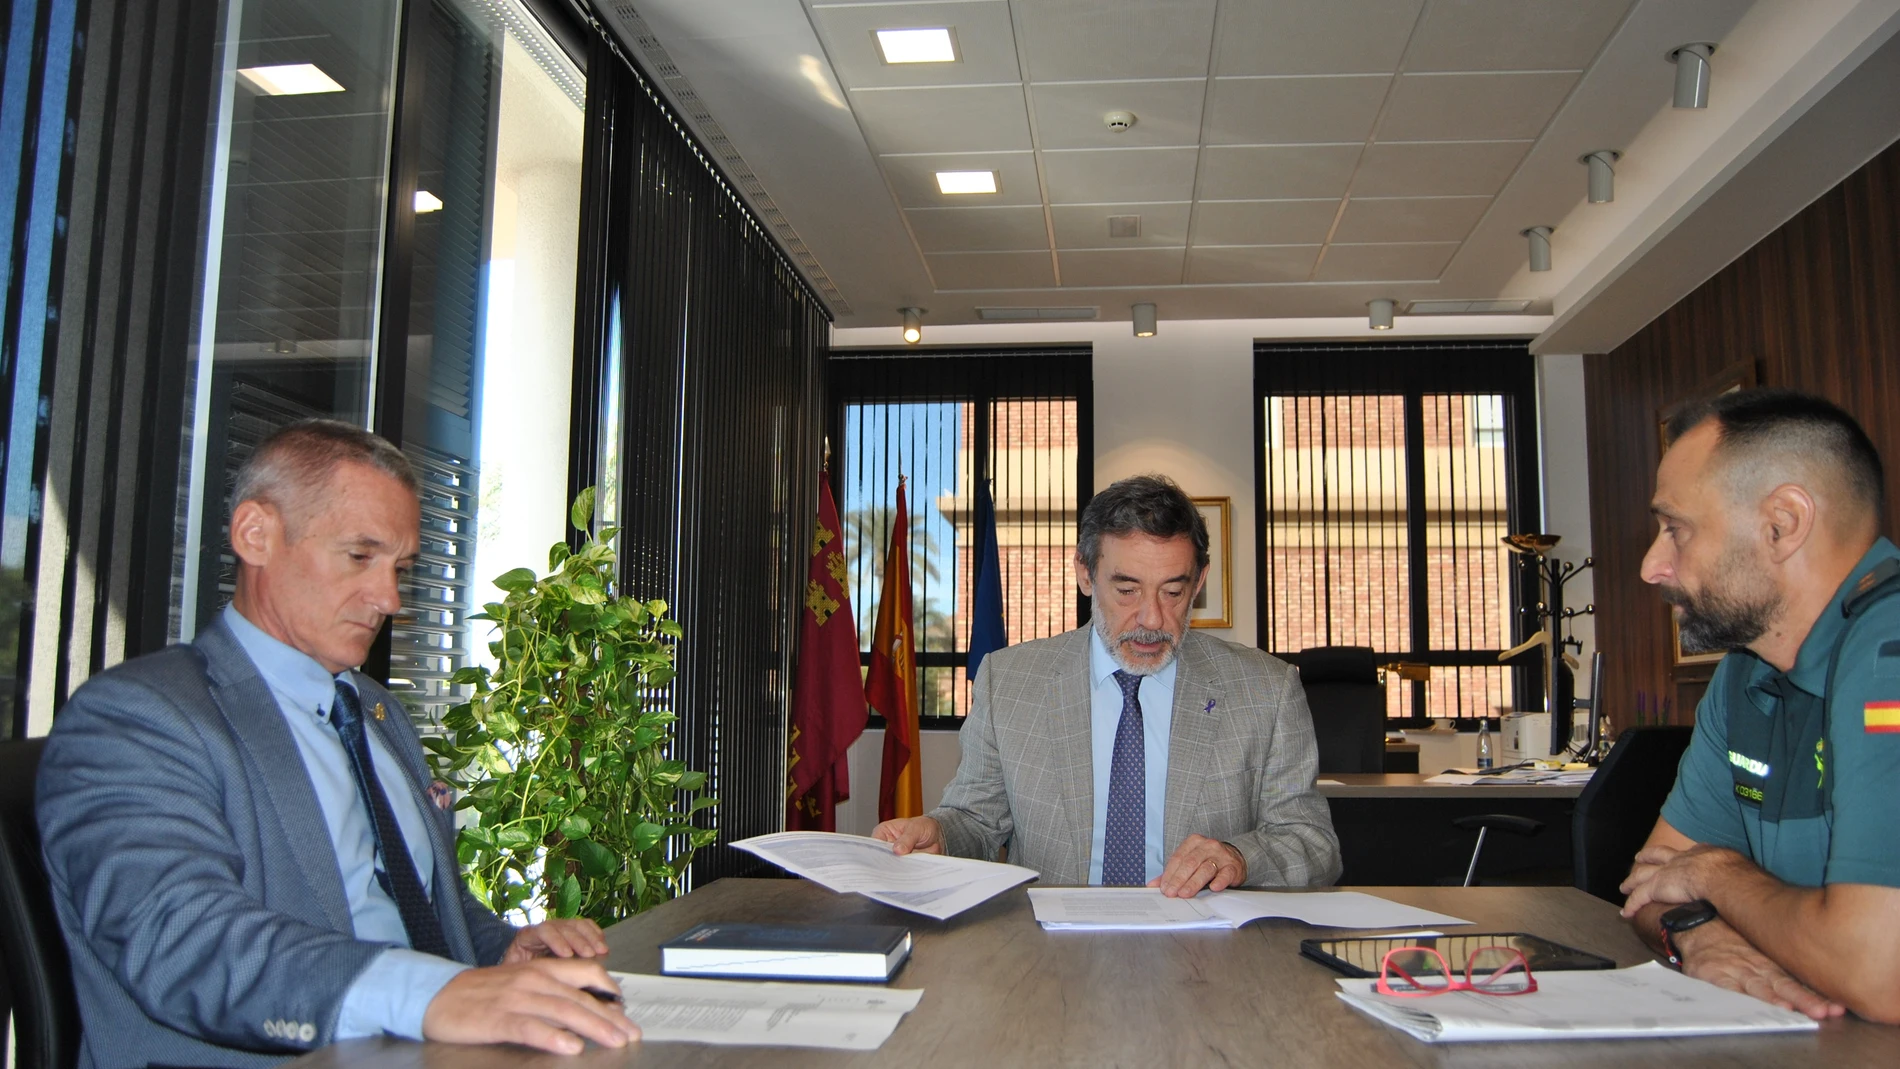 MURCIA.-Murcia reforzará los dispositivos de seguridad en puntos sensibles y aumentará las medidas antiterroristas